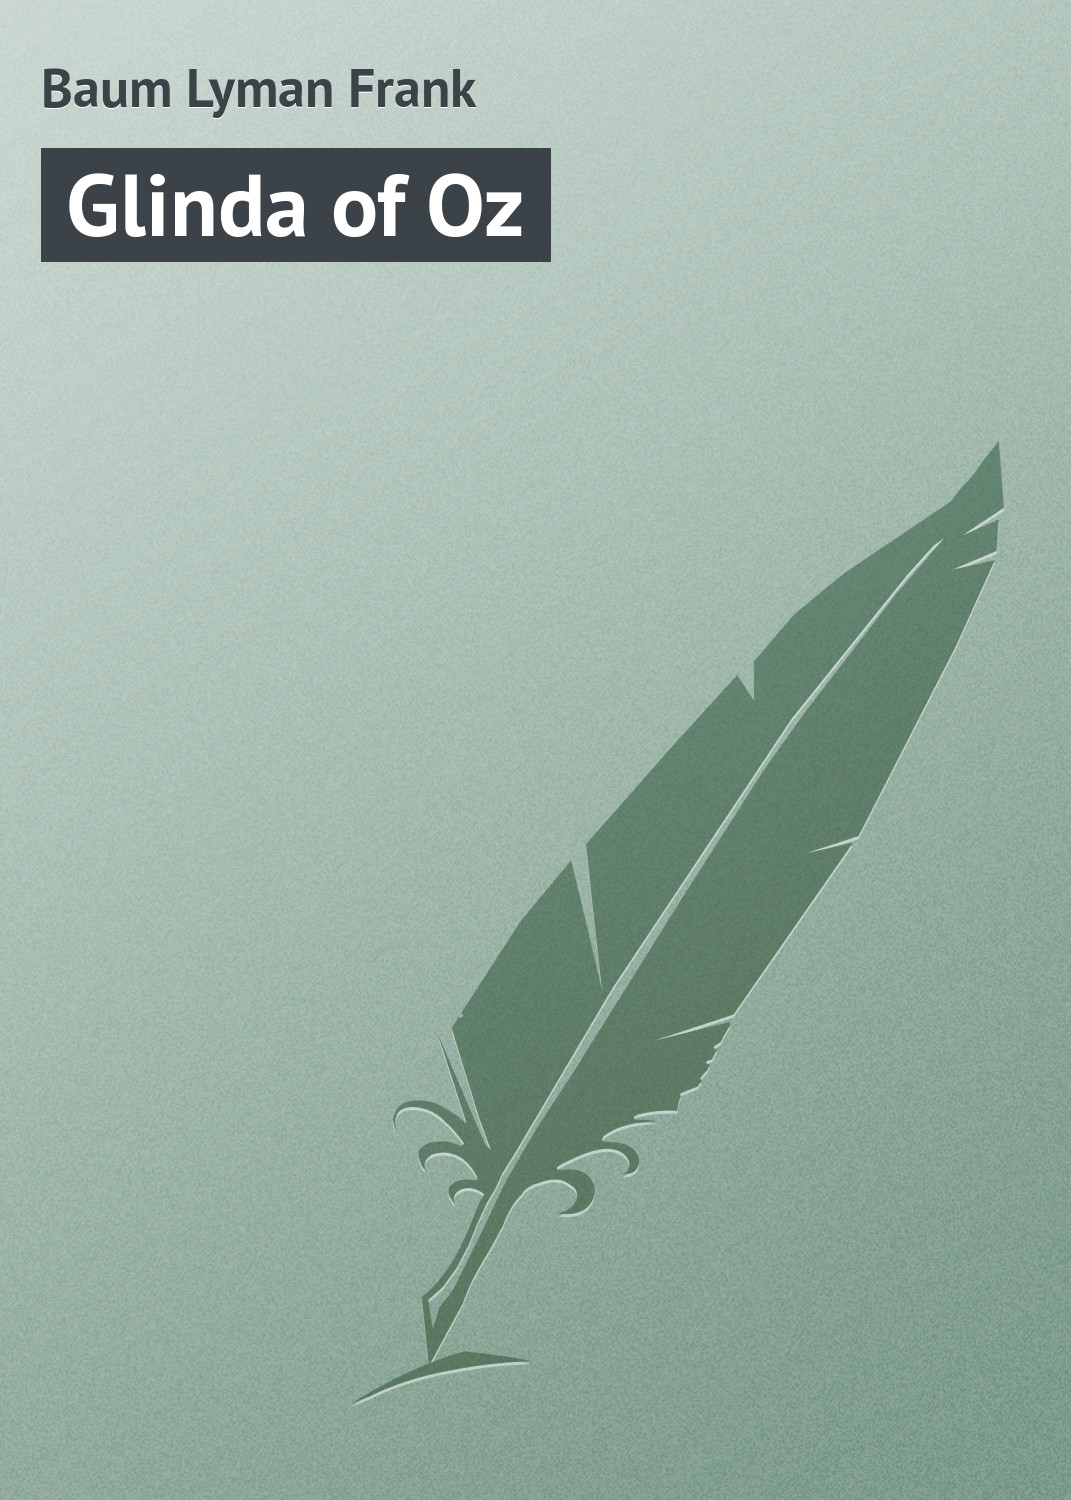 Книга Glinda of Oz из серии , созданная Lyman Baum, может относится к жанру Иностранные языки, Зарубежная классика, Зарубежные детские книги. Стоимость электронной книги Glinda of Oz с идентификатором 23156851 составляет 5.99 руб.